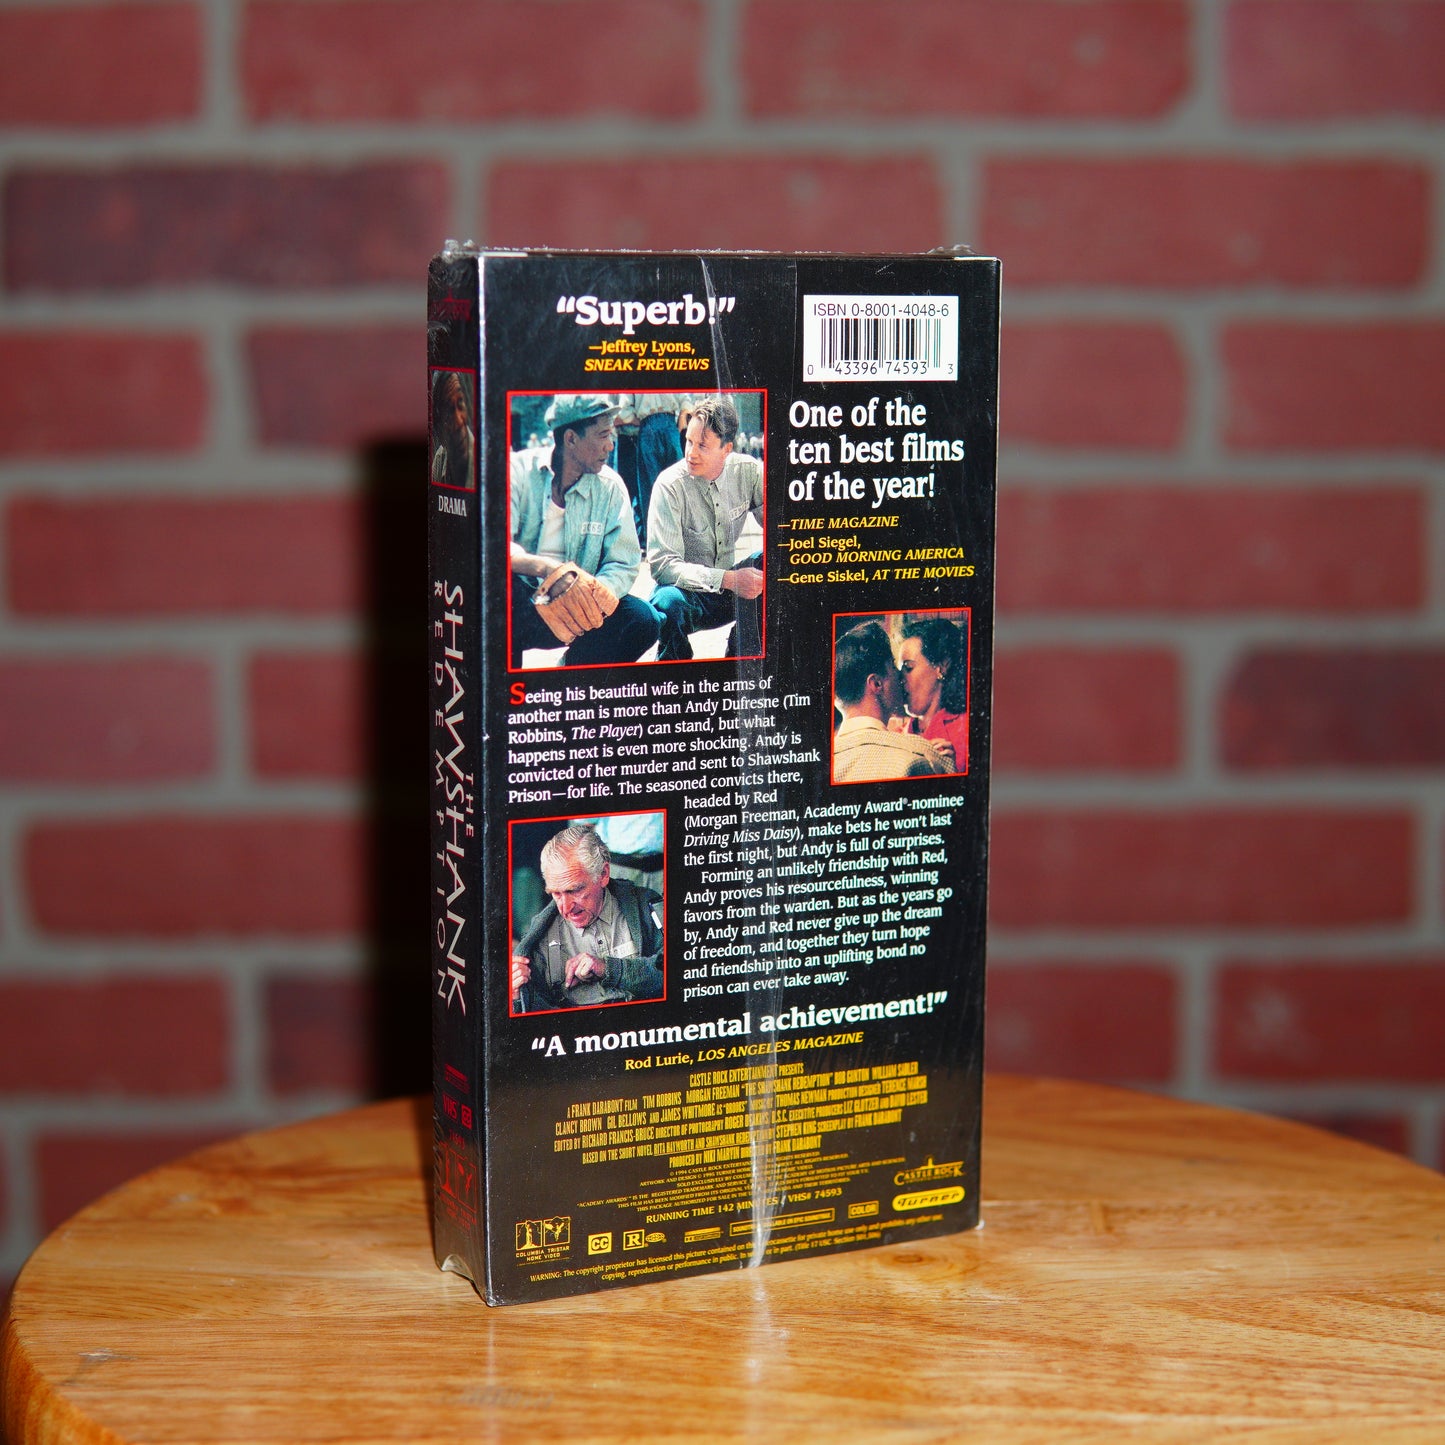 DS VTG The Shawshank Redemption Movie VHS